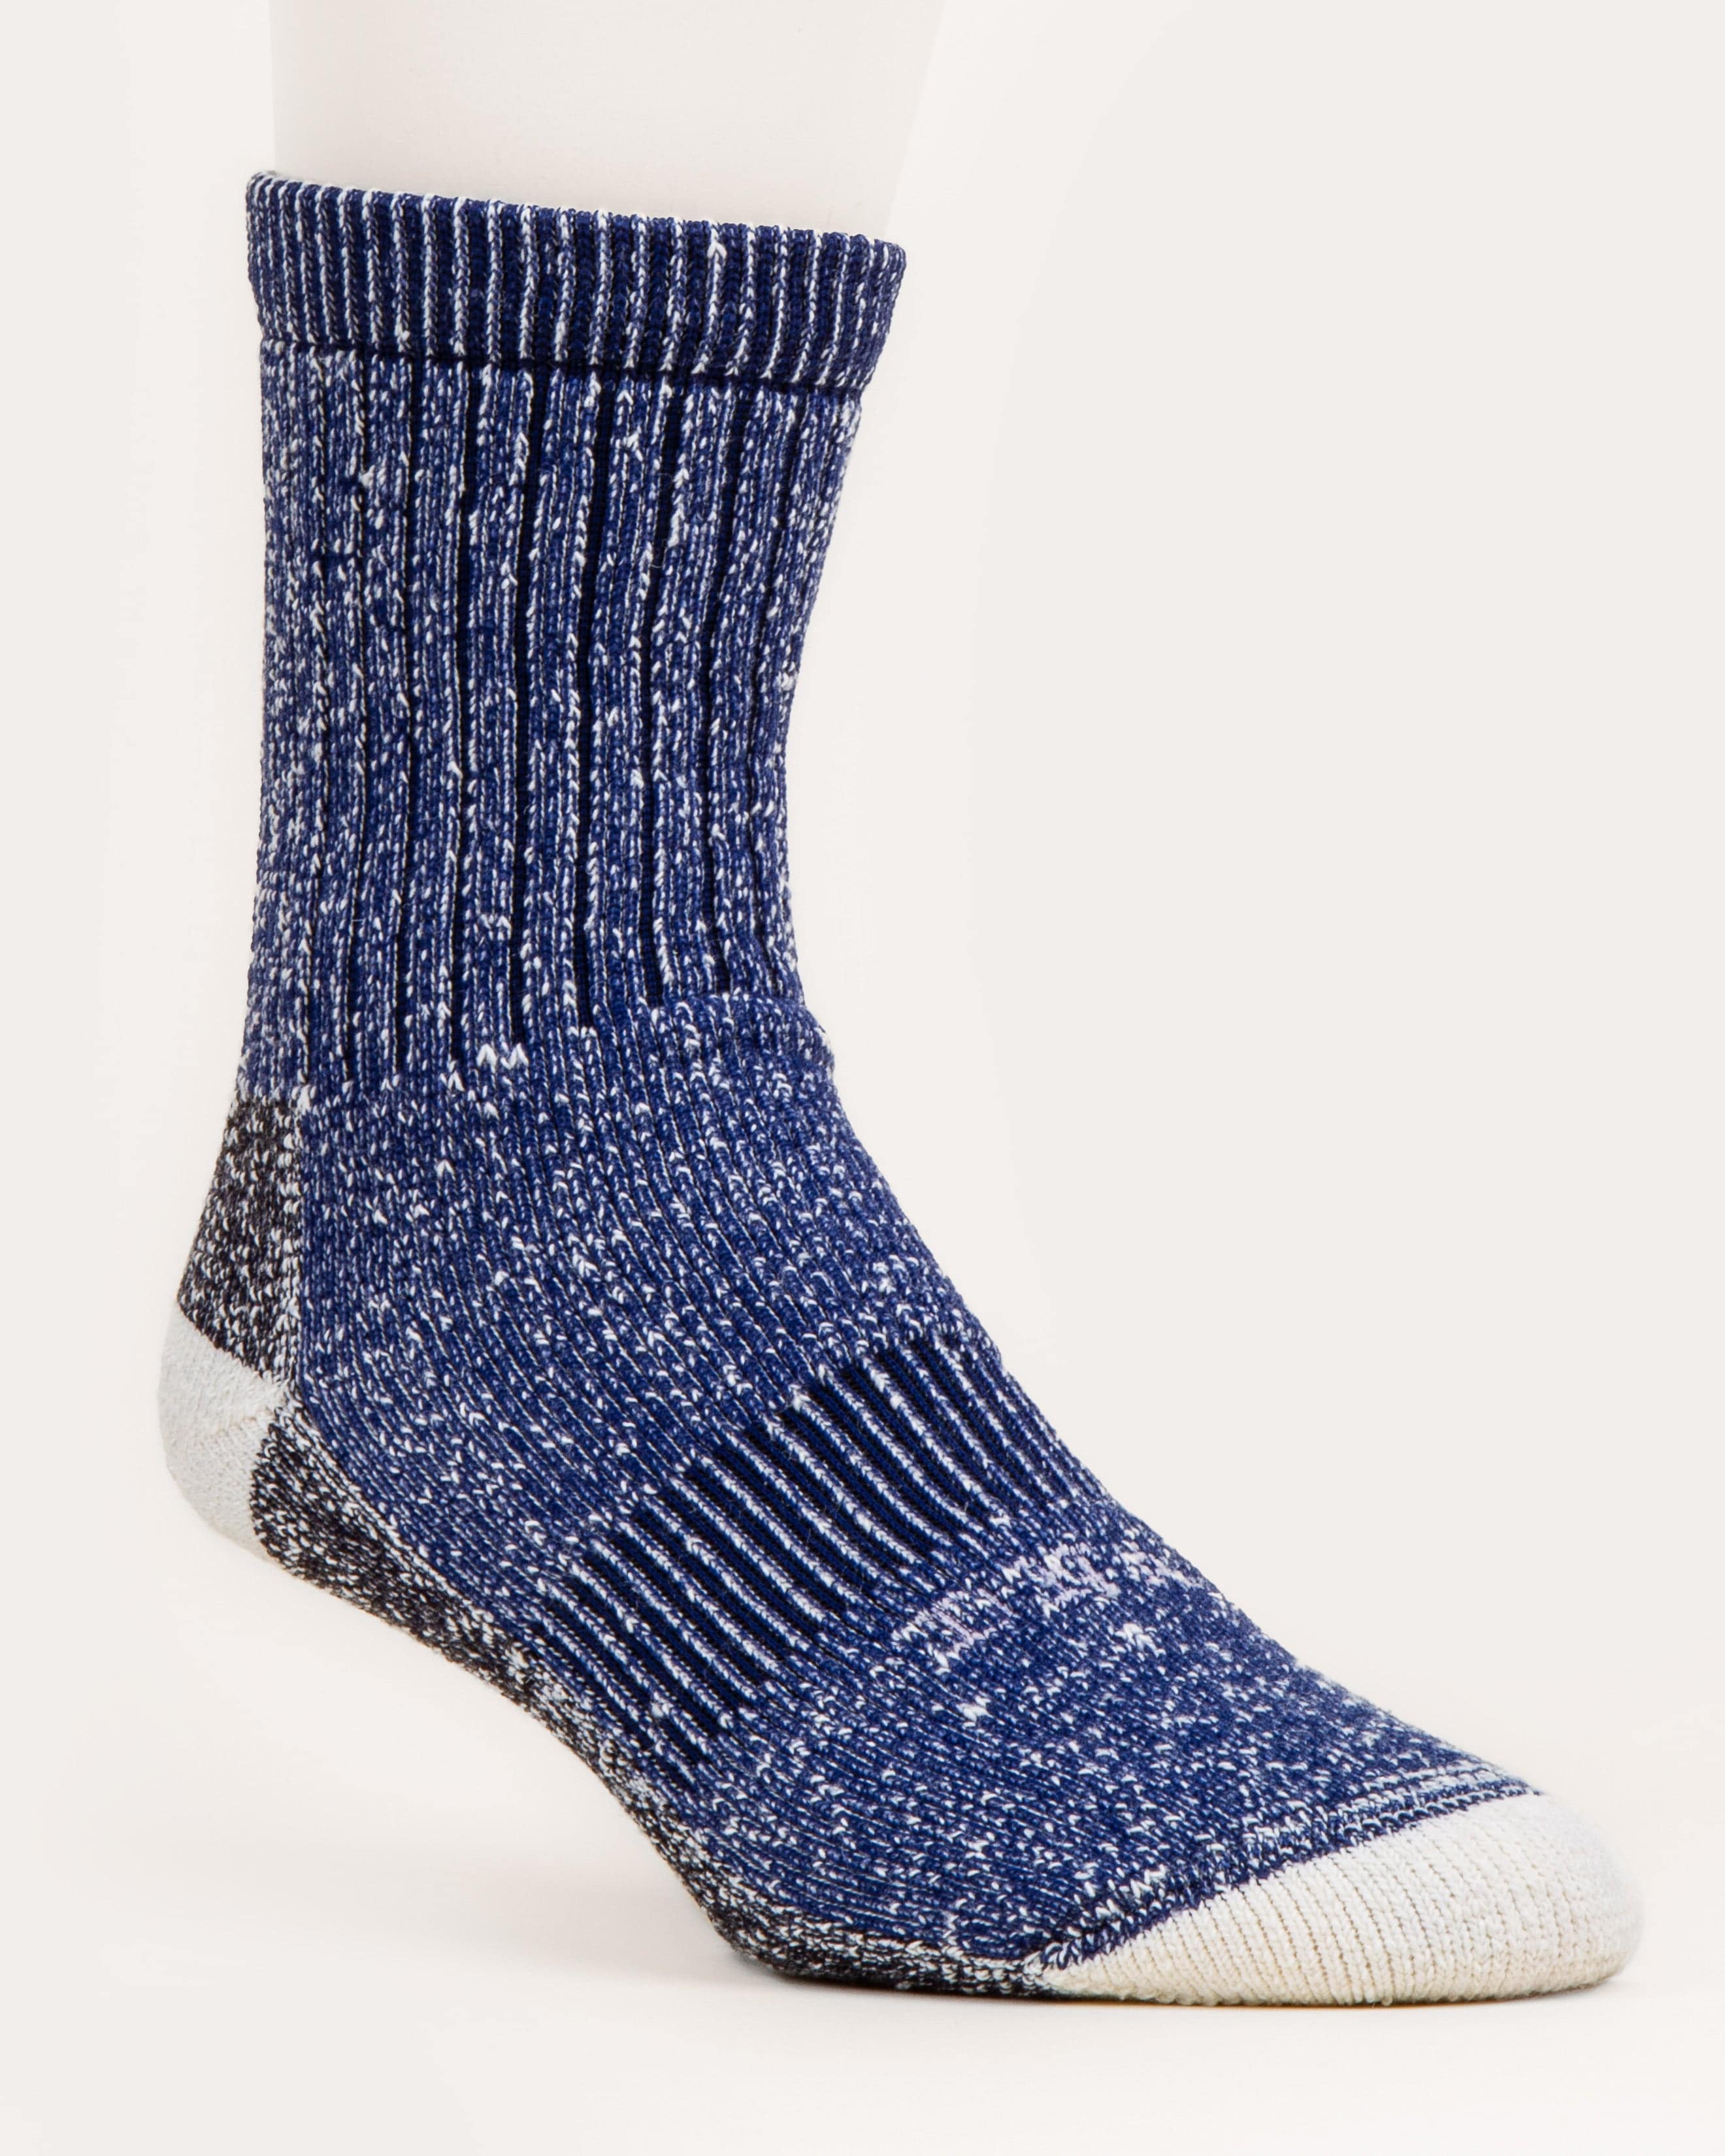 Manor Wool Socks - Navy - DNA Footwear